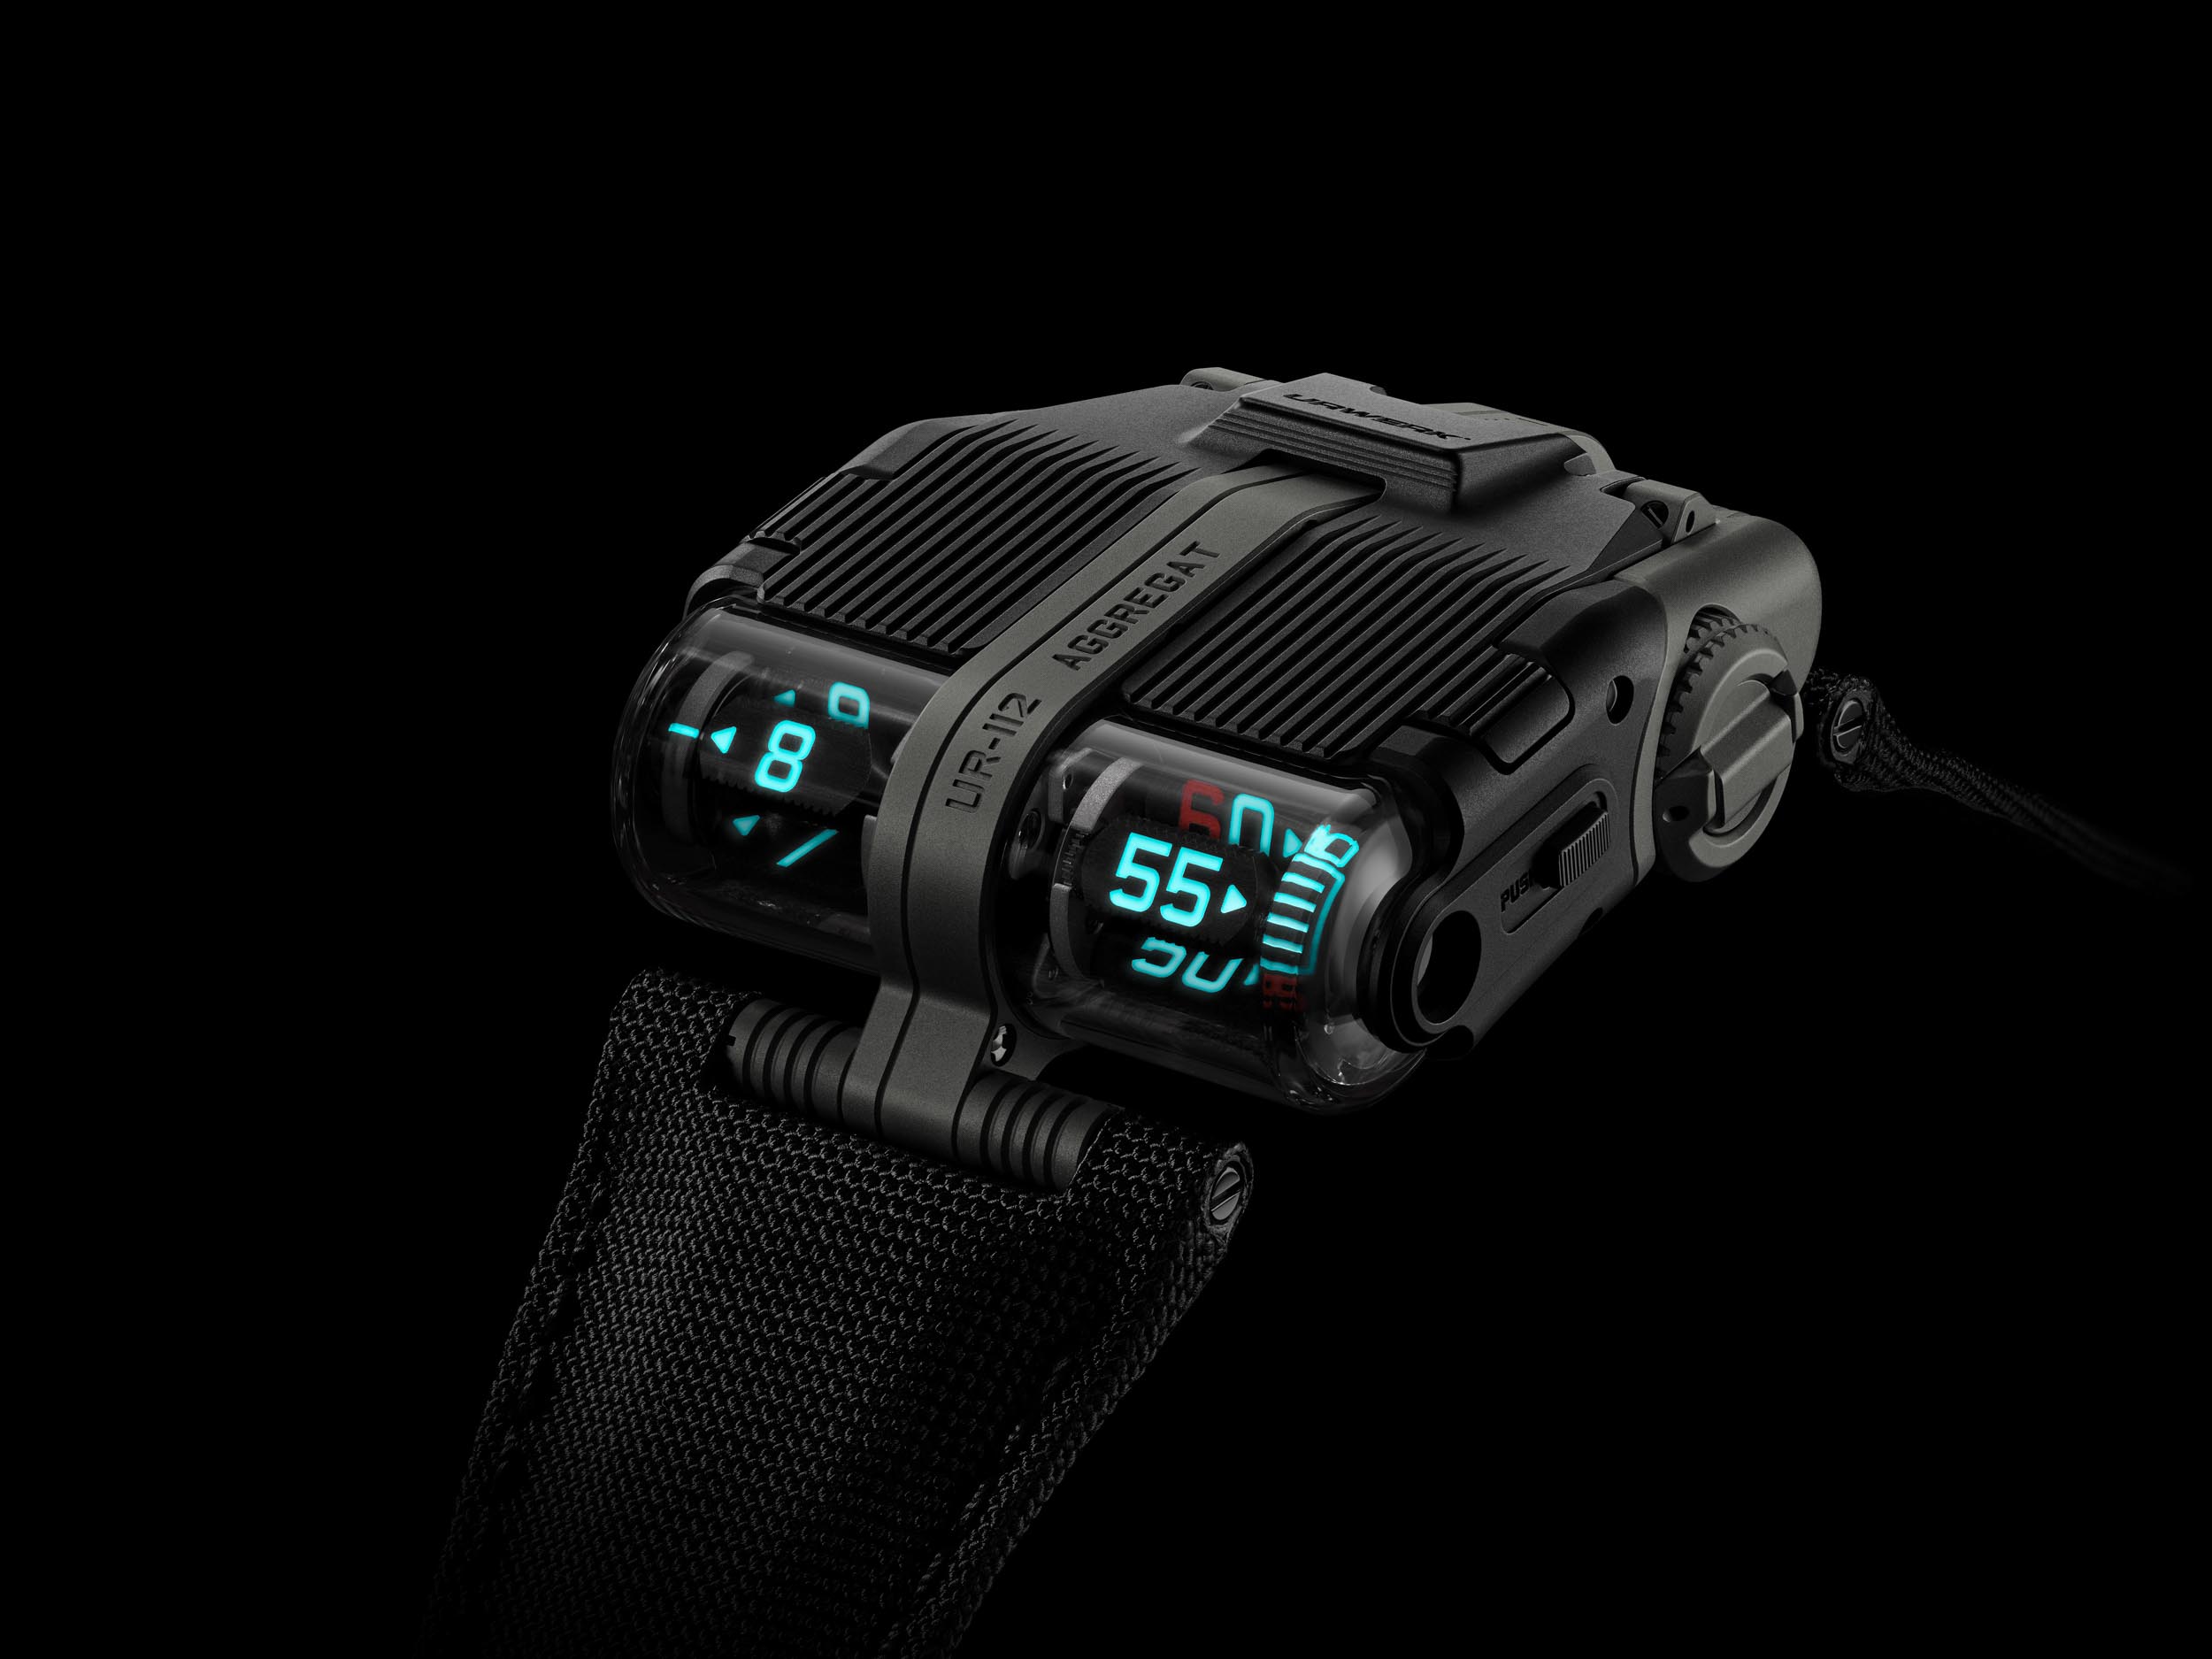 Newest Black Titanium Watch from Urwerk - UR-112 Aggregat